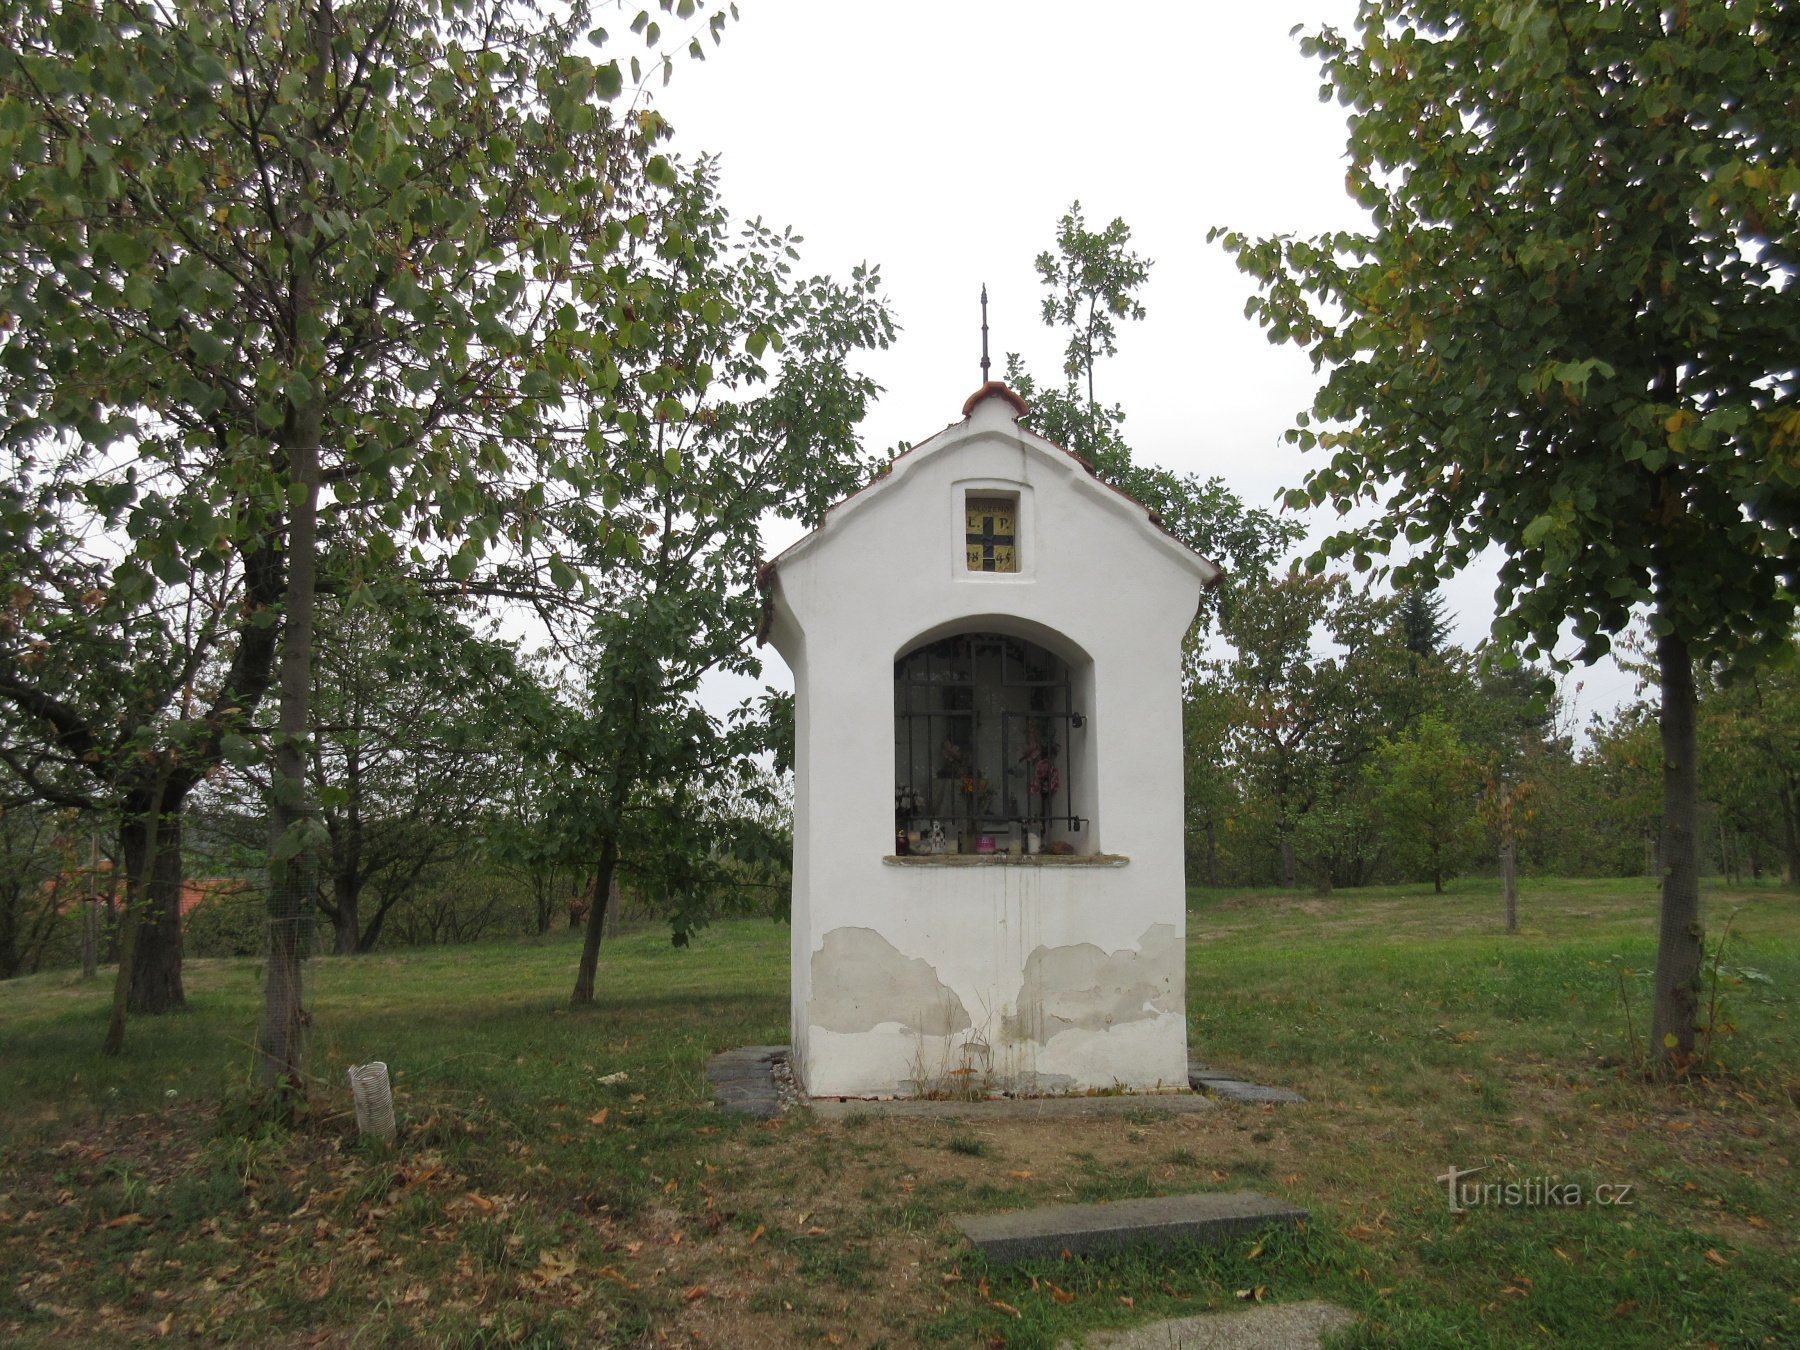 Uma capela no local de um forte pré-histórico